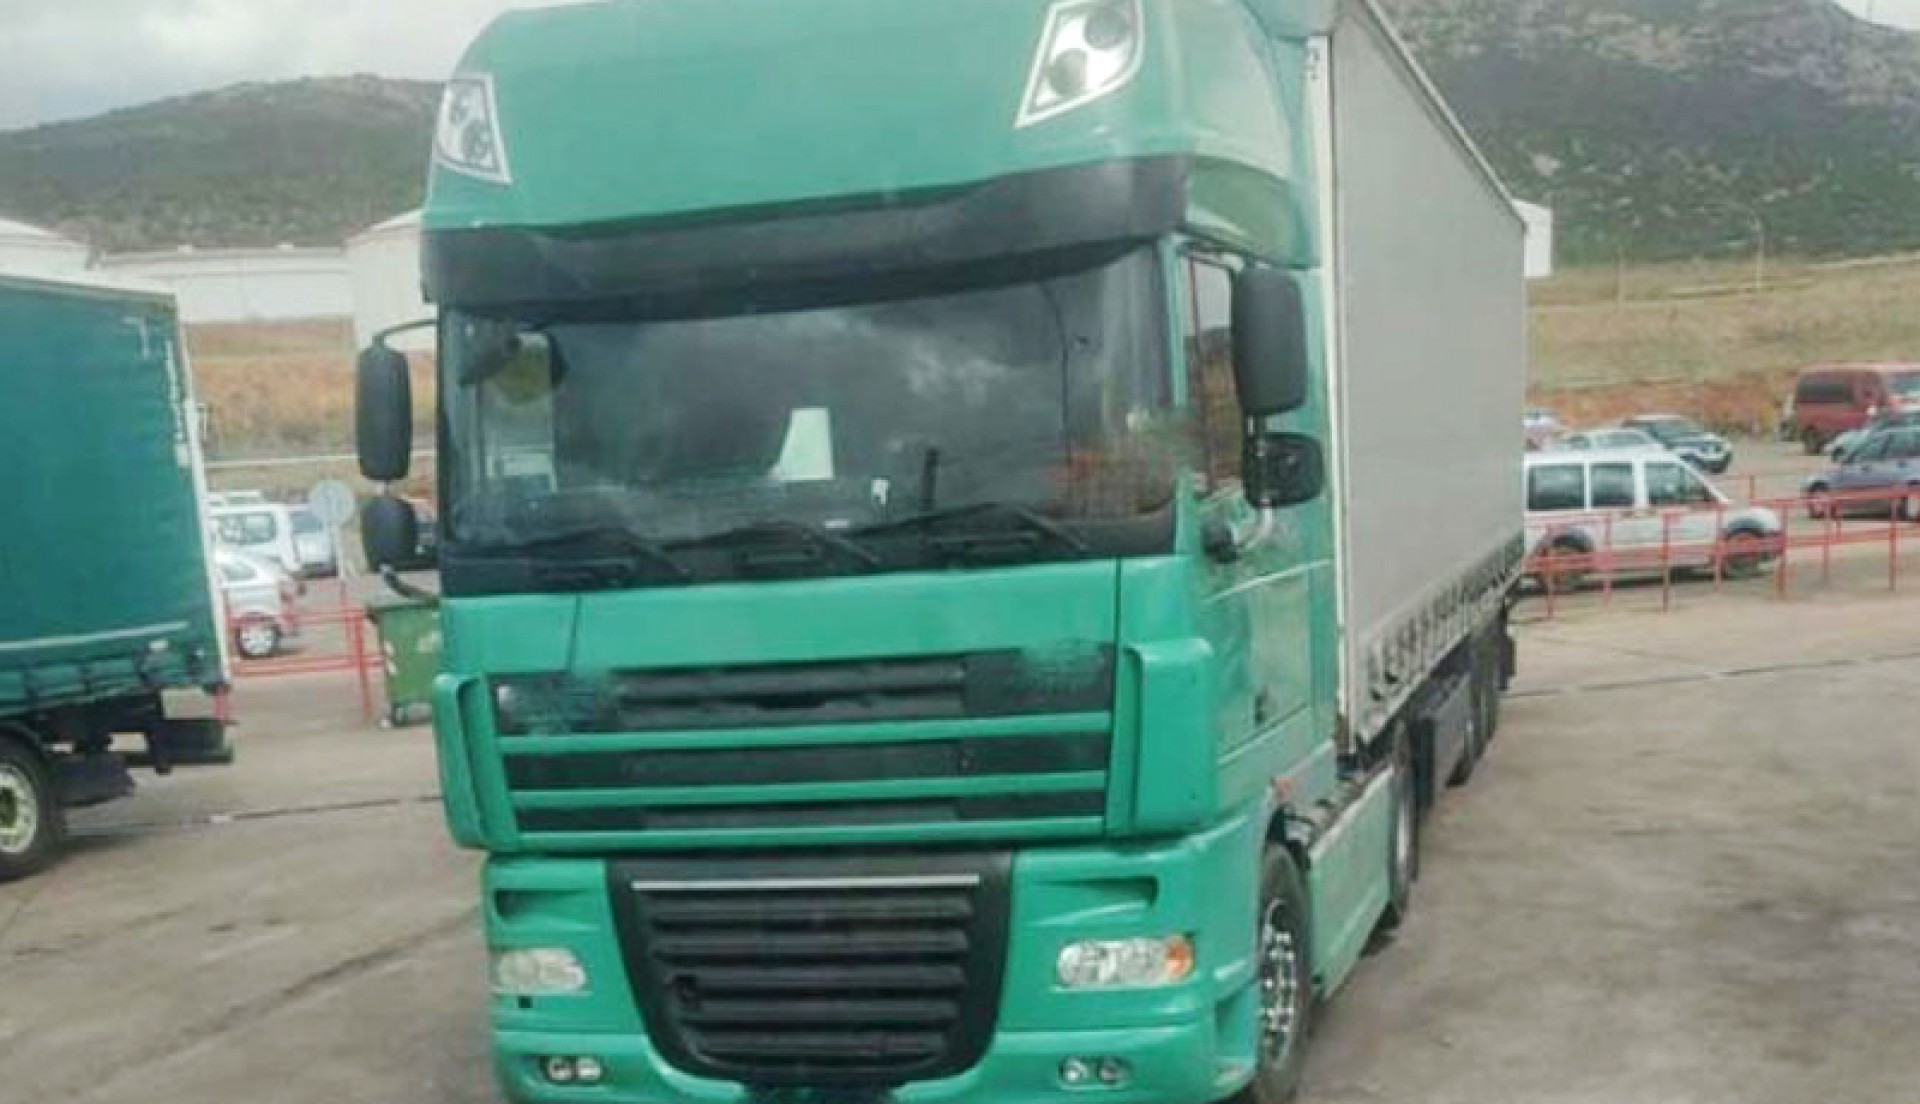 Spania. Șoferi profesioniști români, prinși la furat de motorină din alte camioane